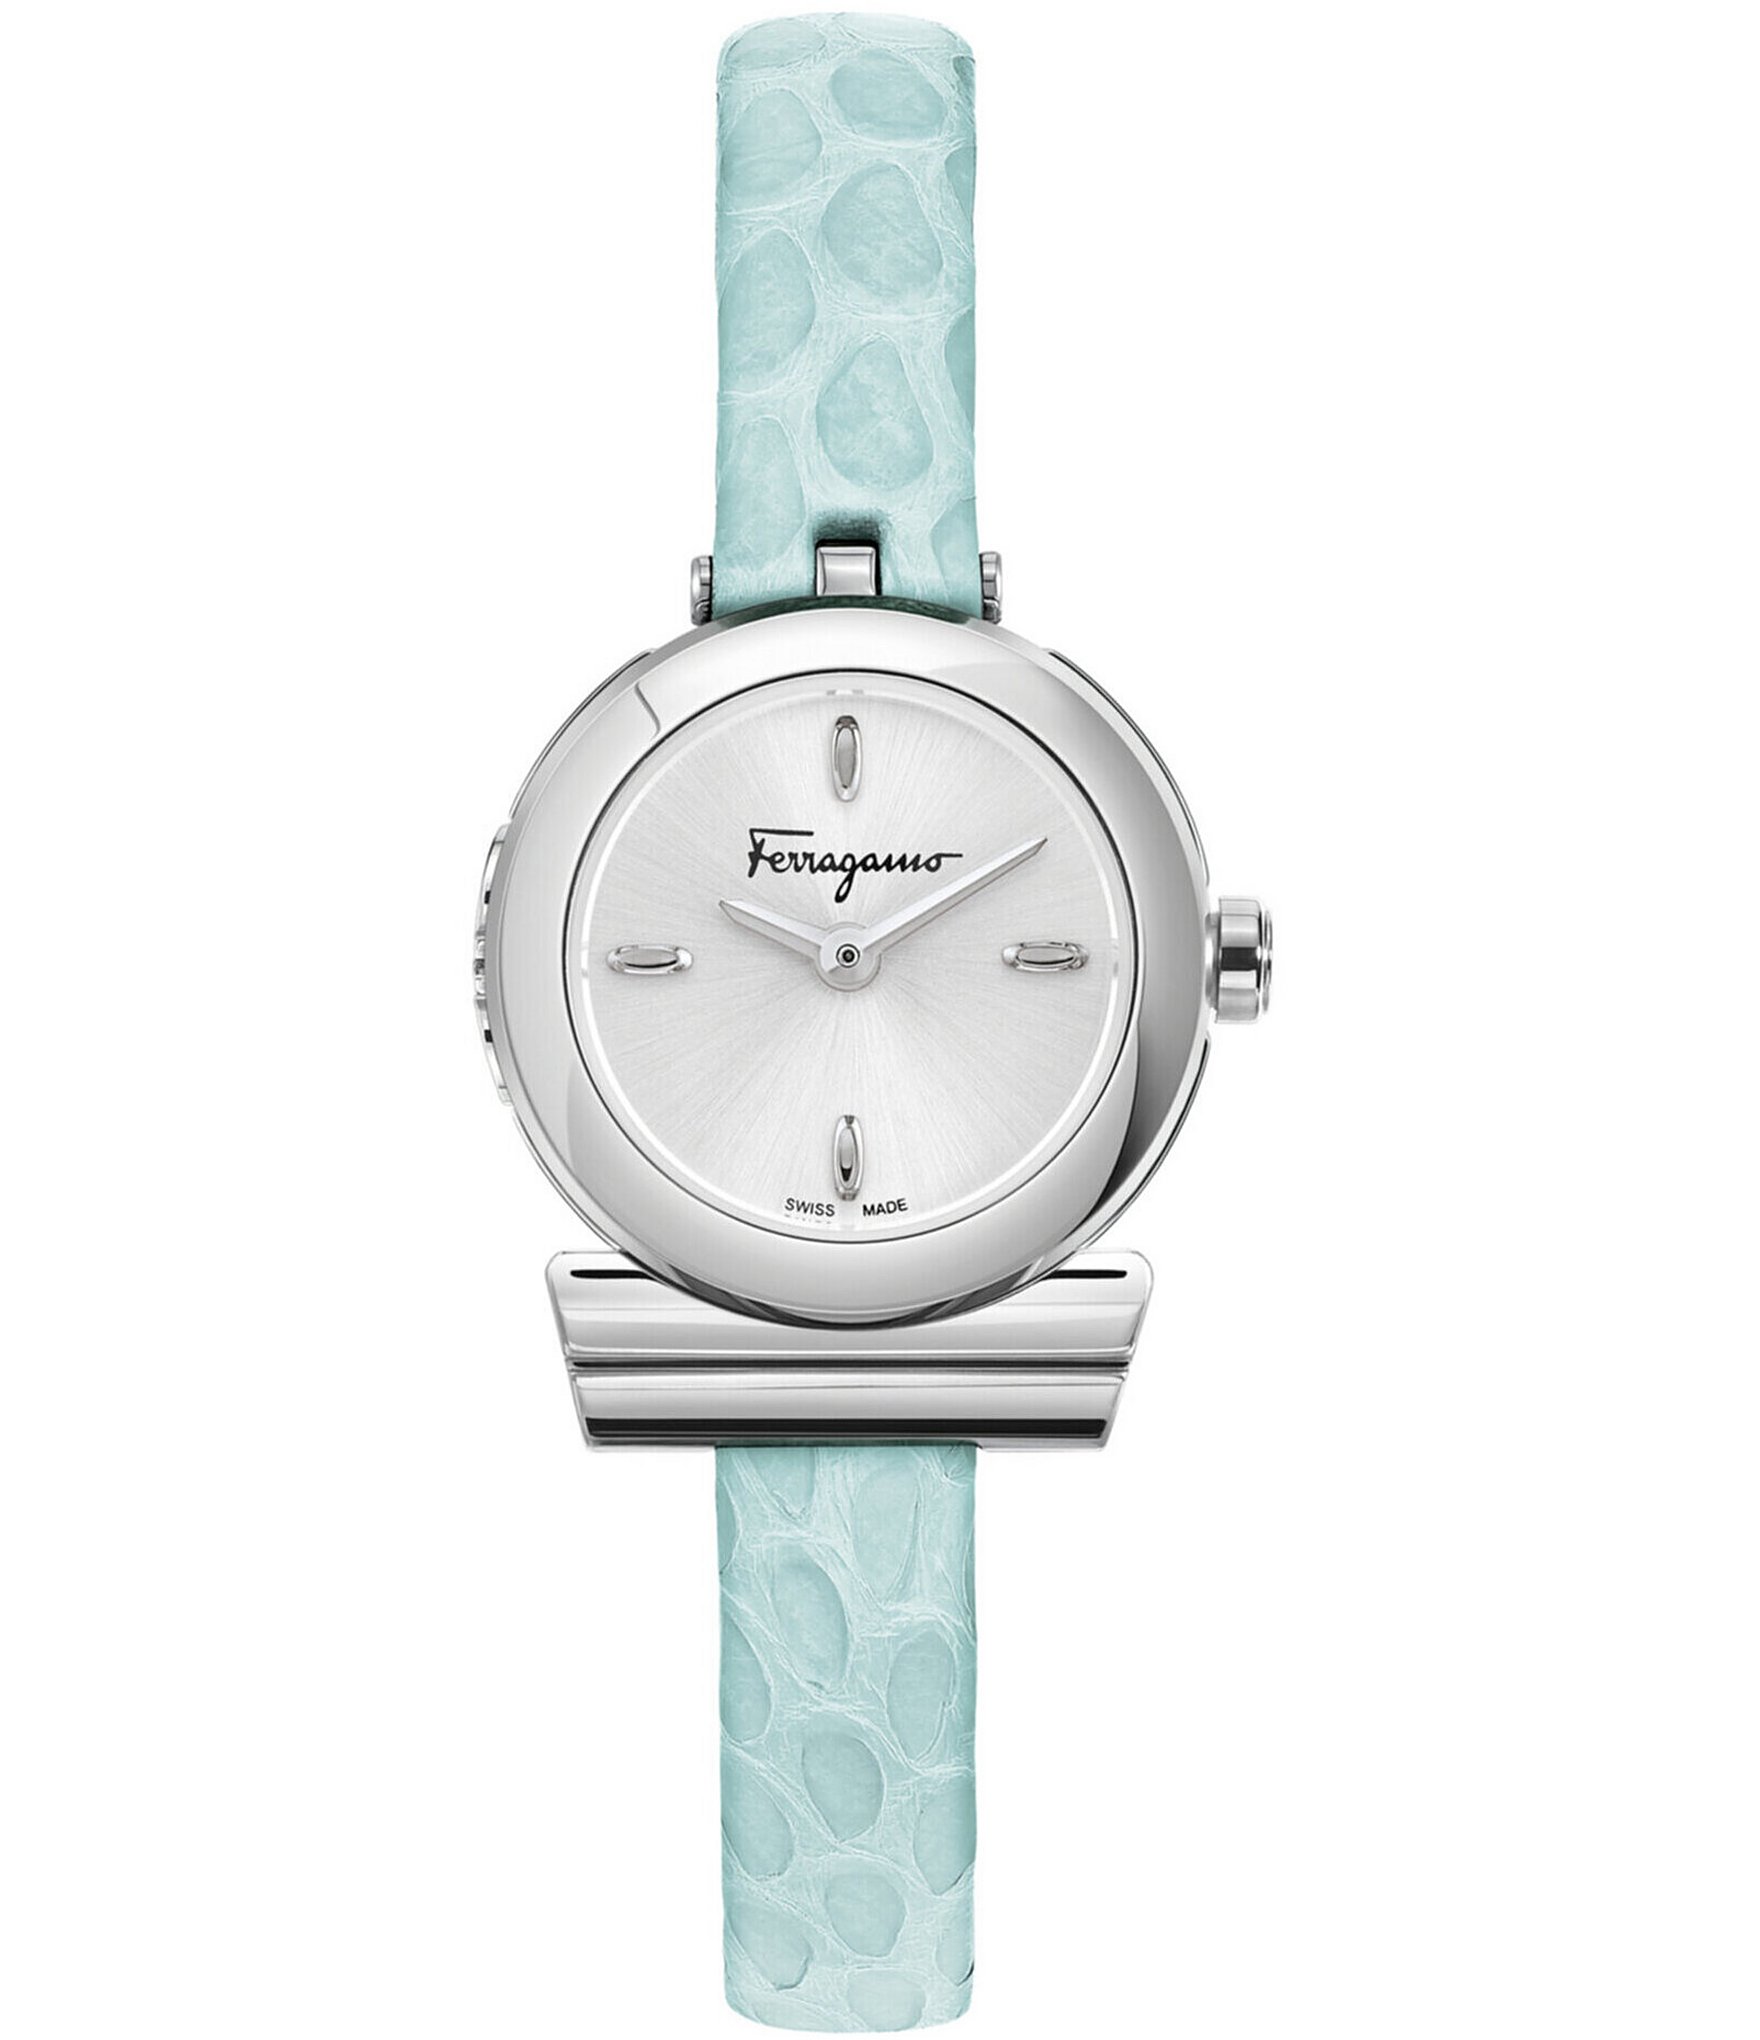 Gancino watch, Watches, Women's